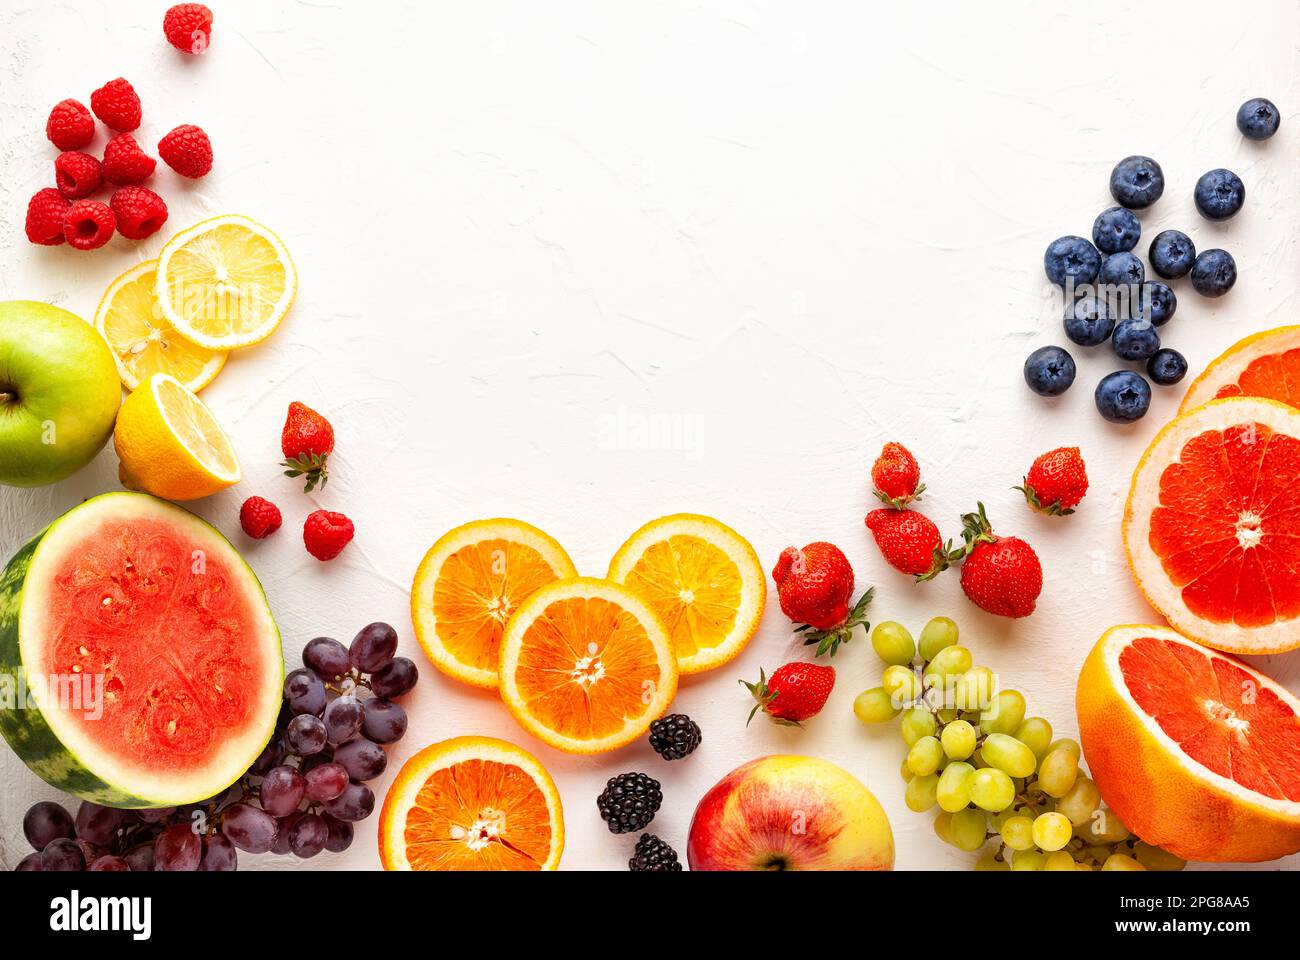 Frutta fresca e frutti di bosco assortiti su sfondo bianco. Mangiare pulito, vita sana. Vista dall'alto. Foto Stock